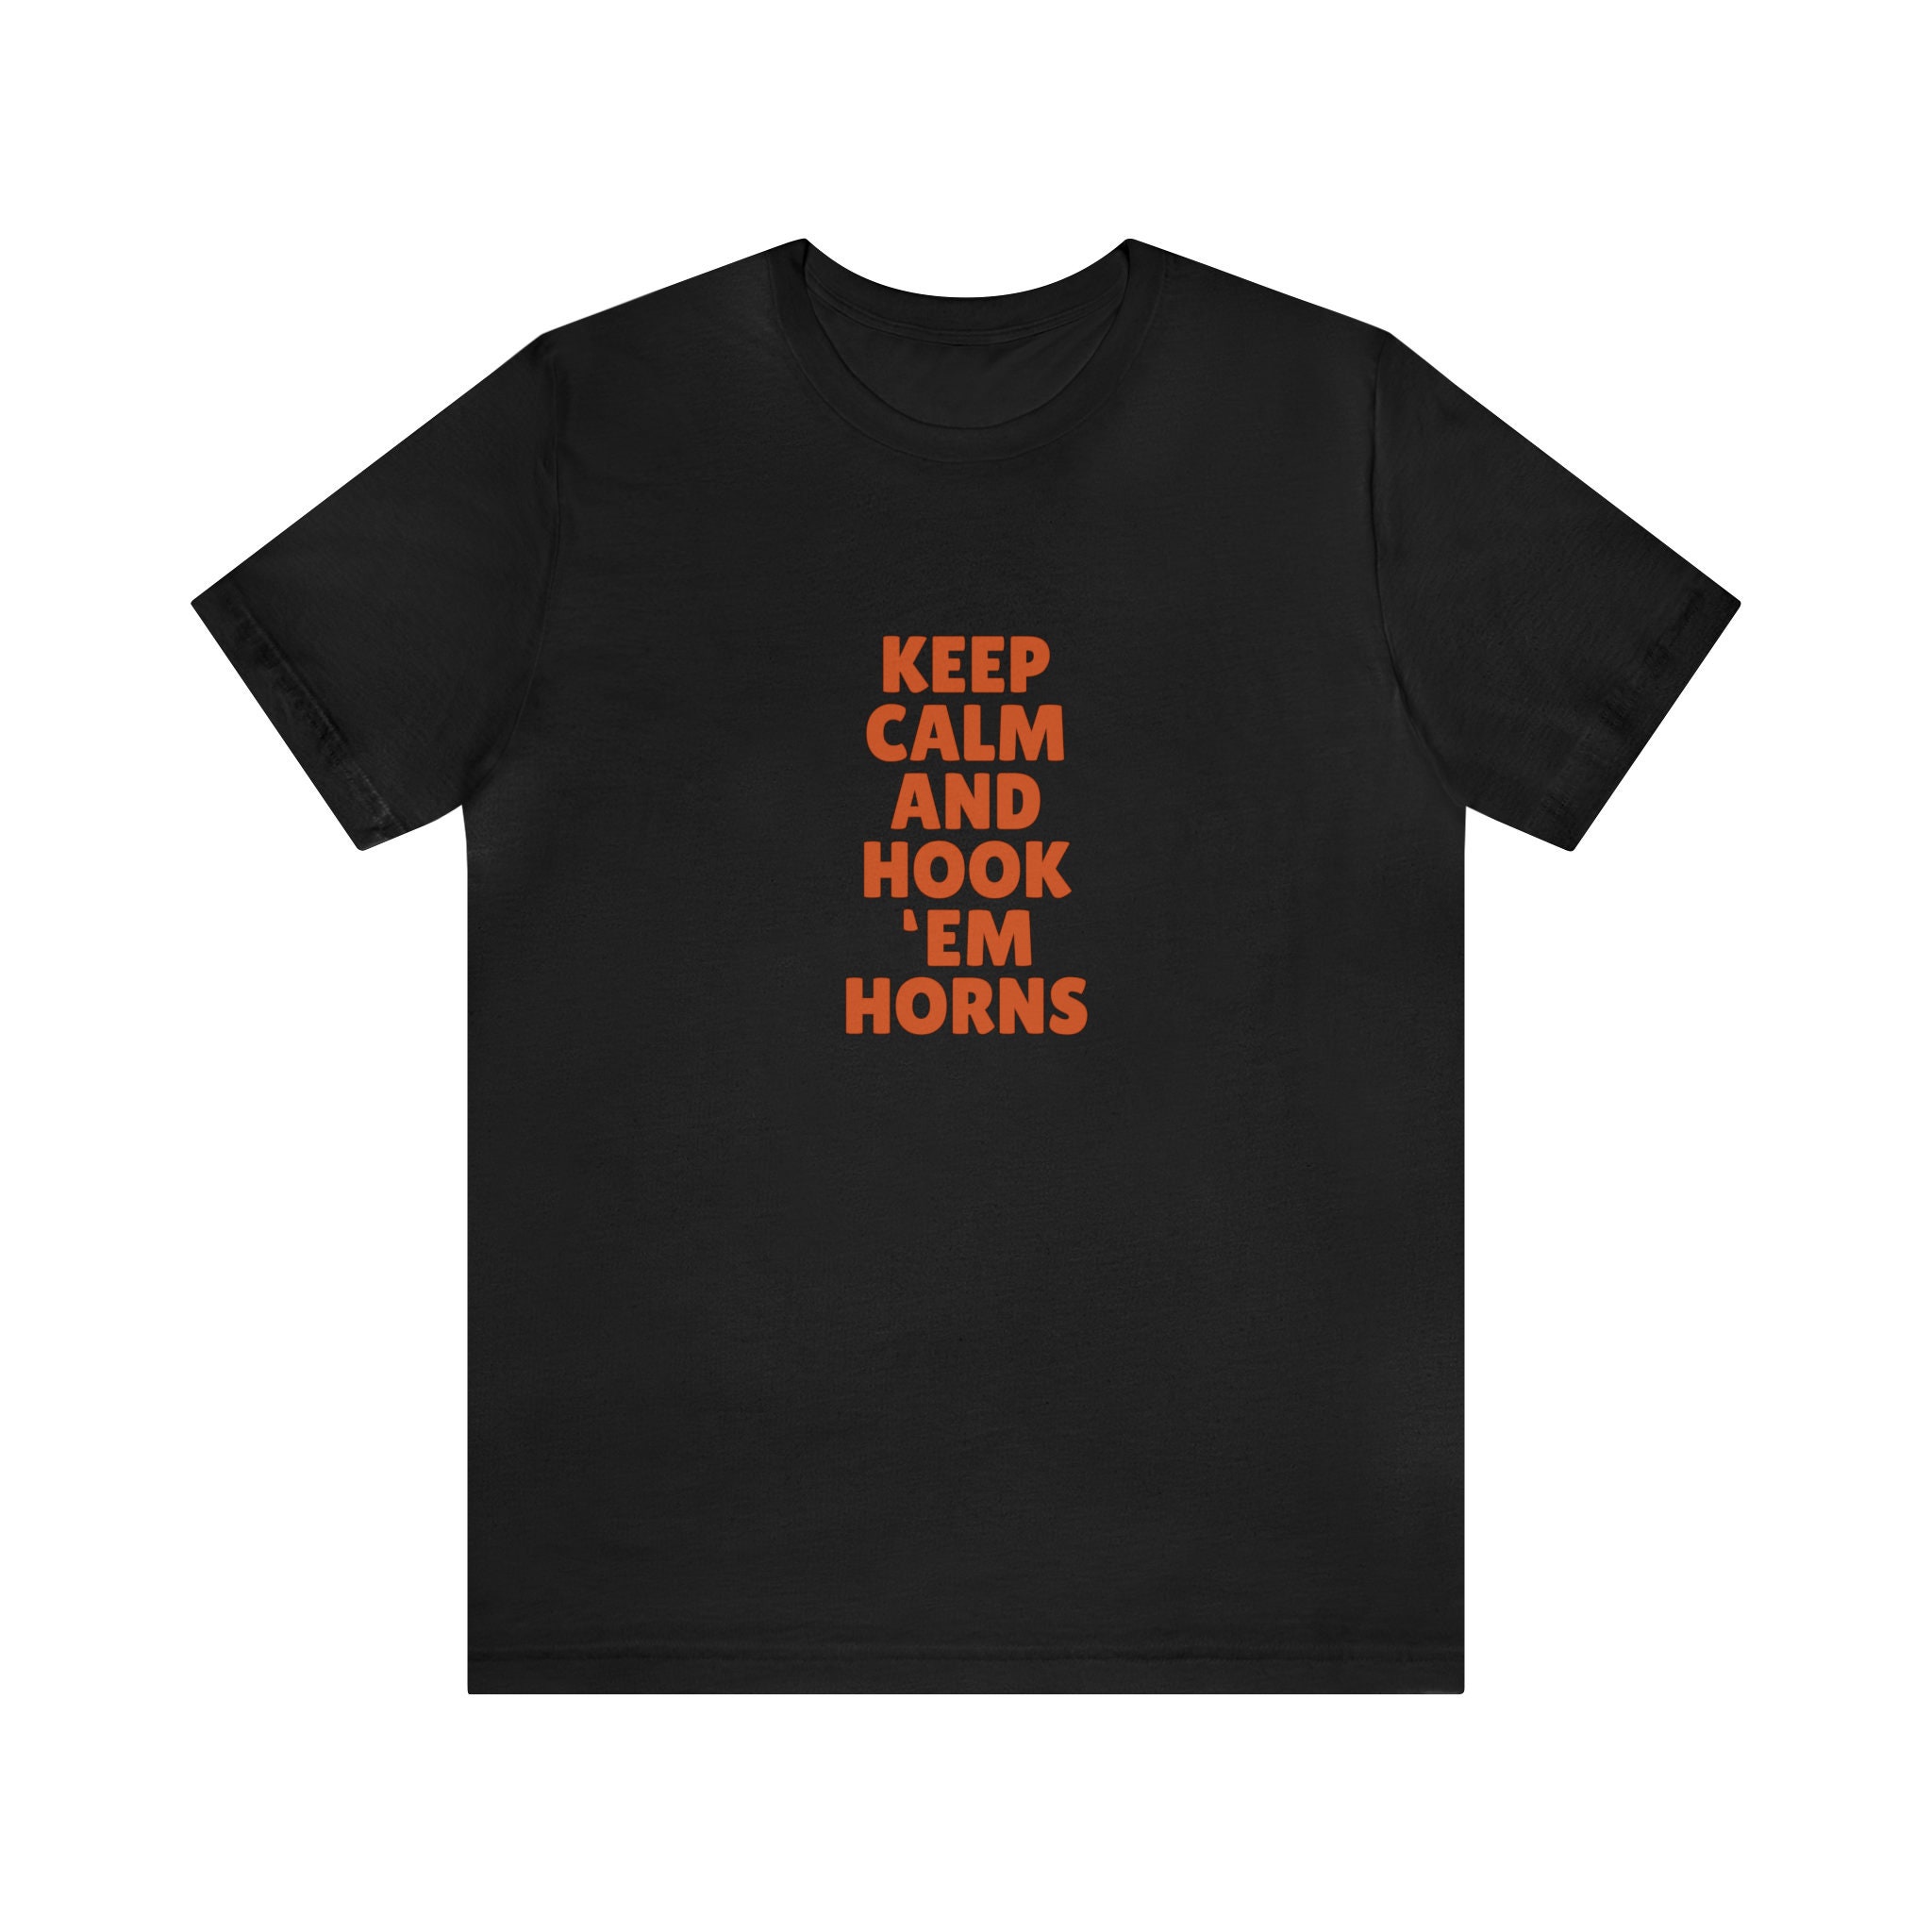 Keep Calm and Hook 'Em Horns Shirt, Longhorns Shirt, Longhorns T-Shirt, Longhorns Tee, University of Texas, UT Shirt, Football Shirt, Bevo.